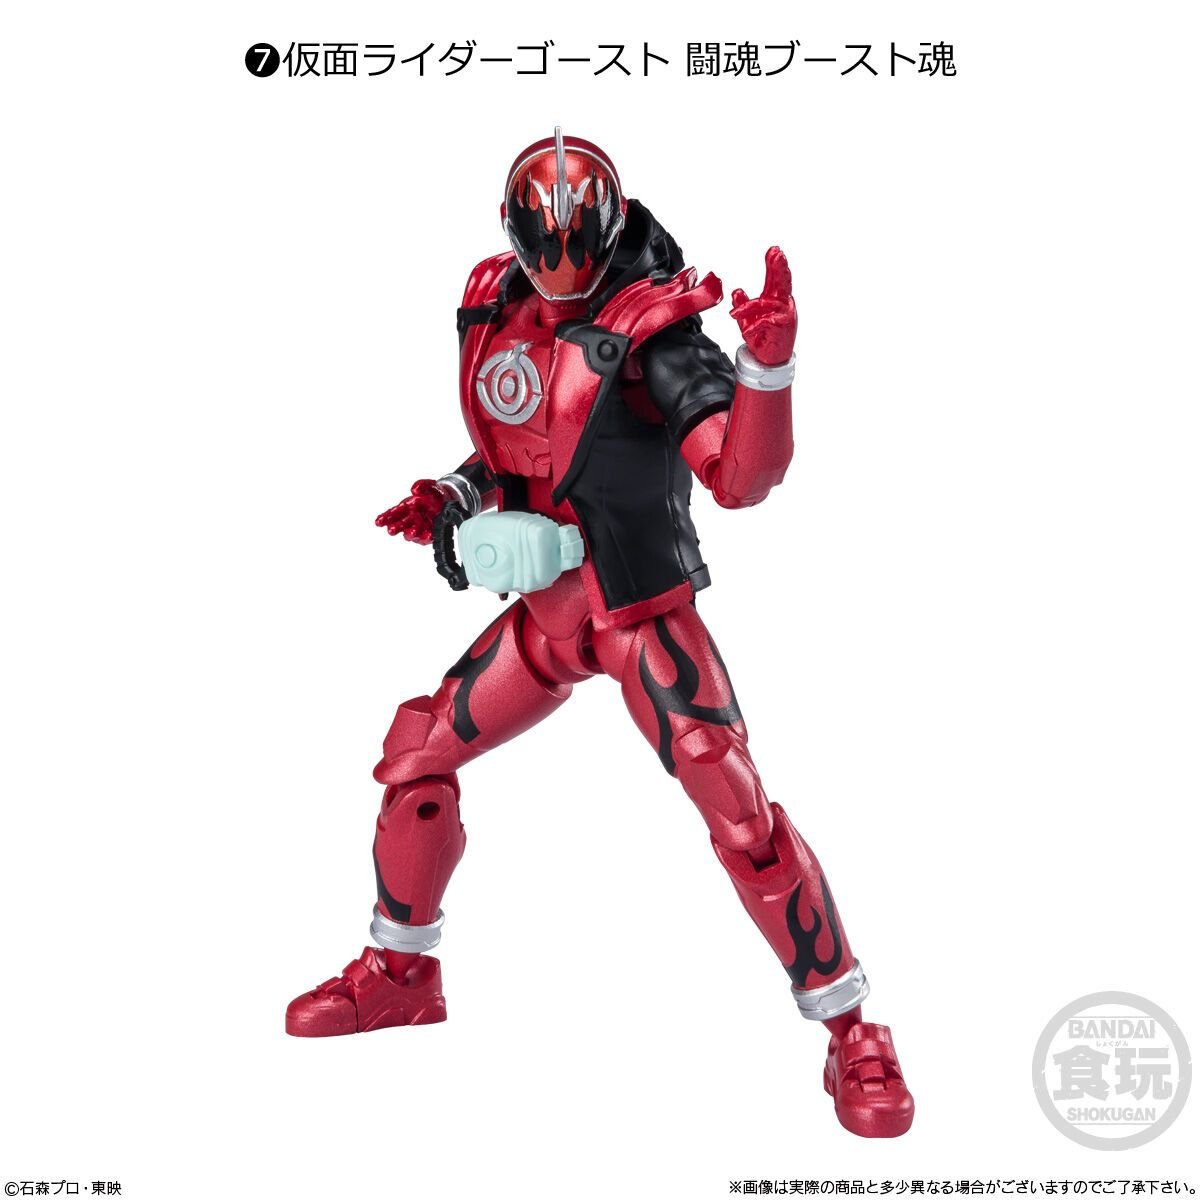  Shodo-Xx (Double Cross) Kamen Rider 03 Đồ Chơi Mô Hình Nhân Vật BANDAI CANDY A2638050-4778 